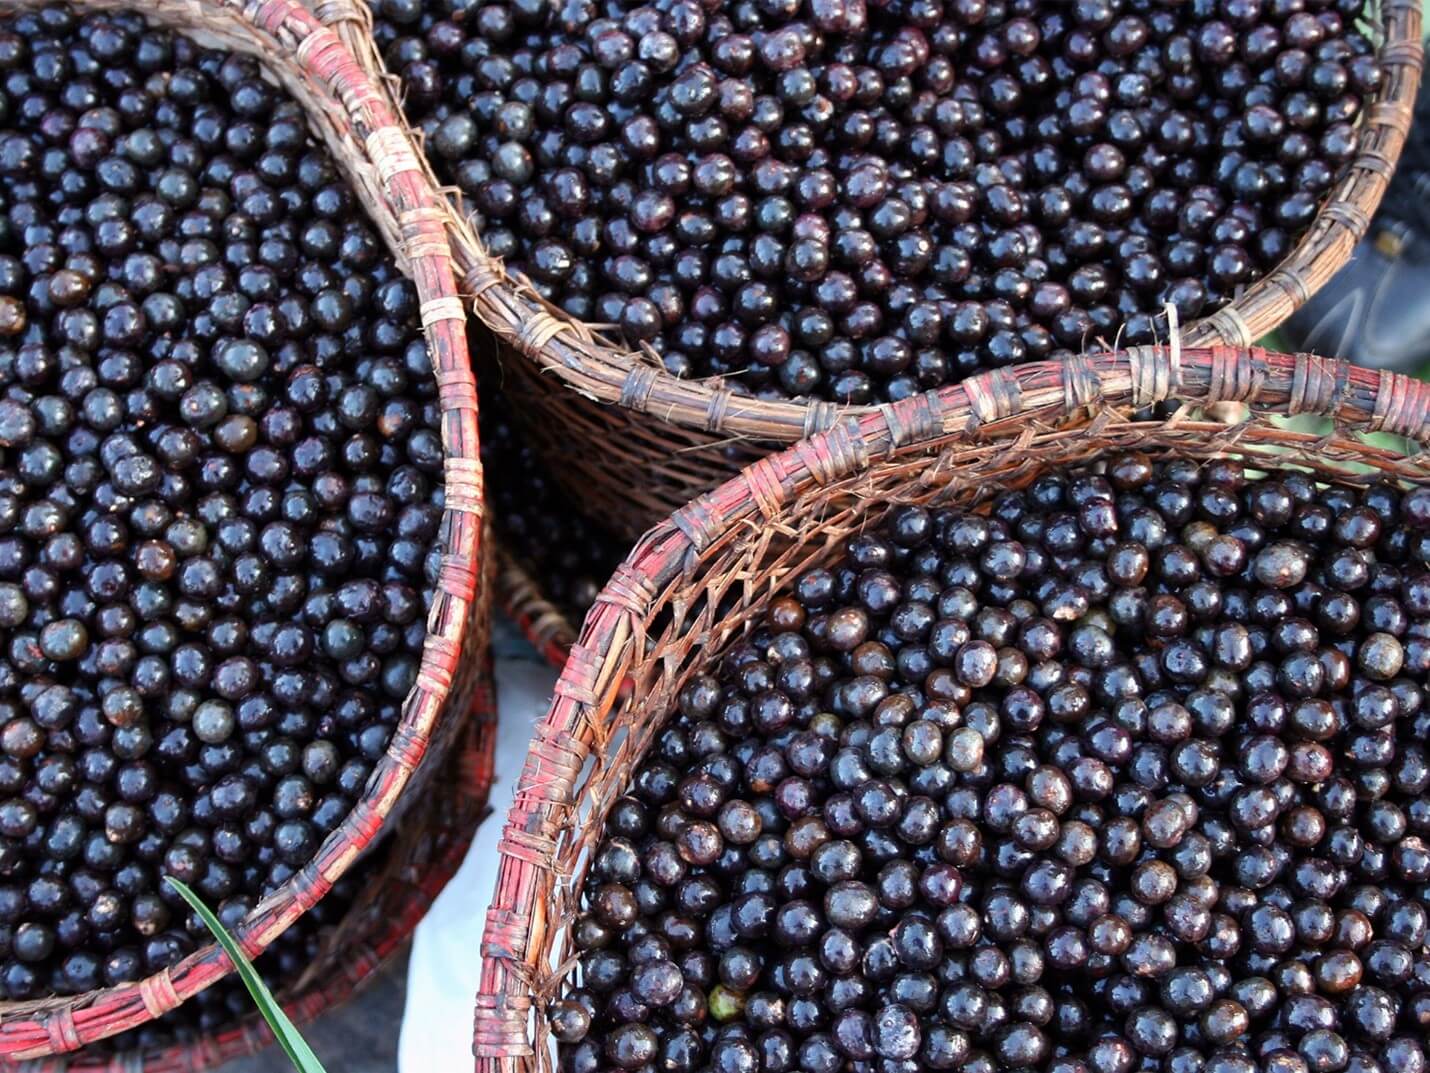 Açai Berries